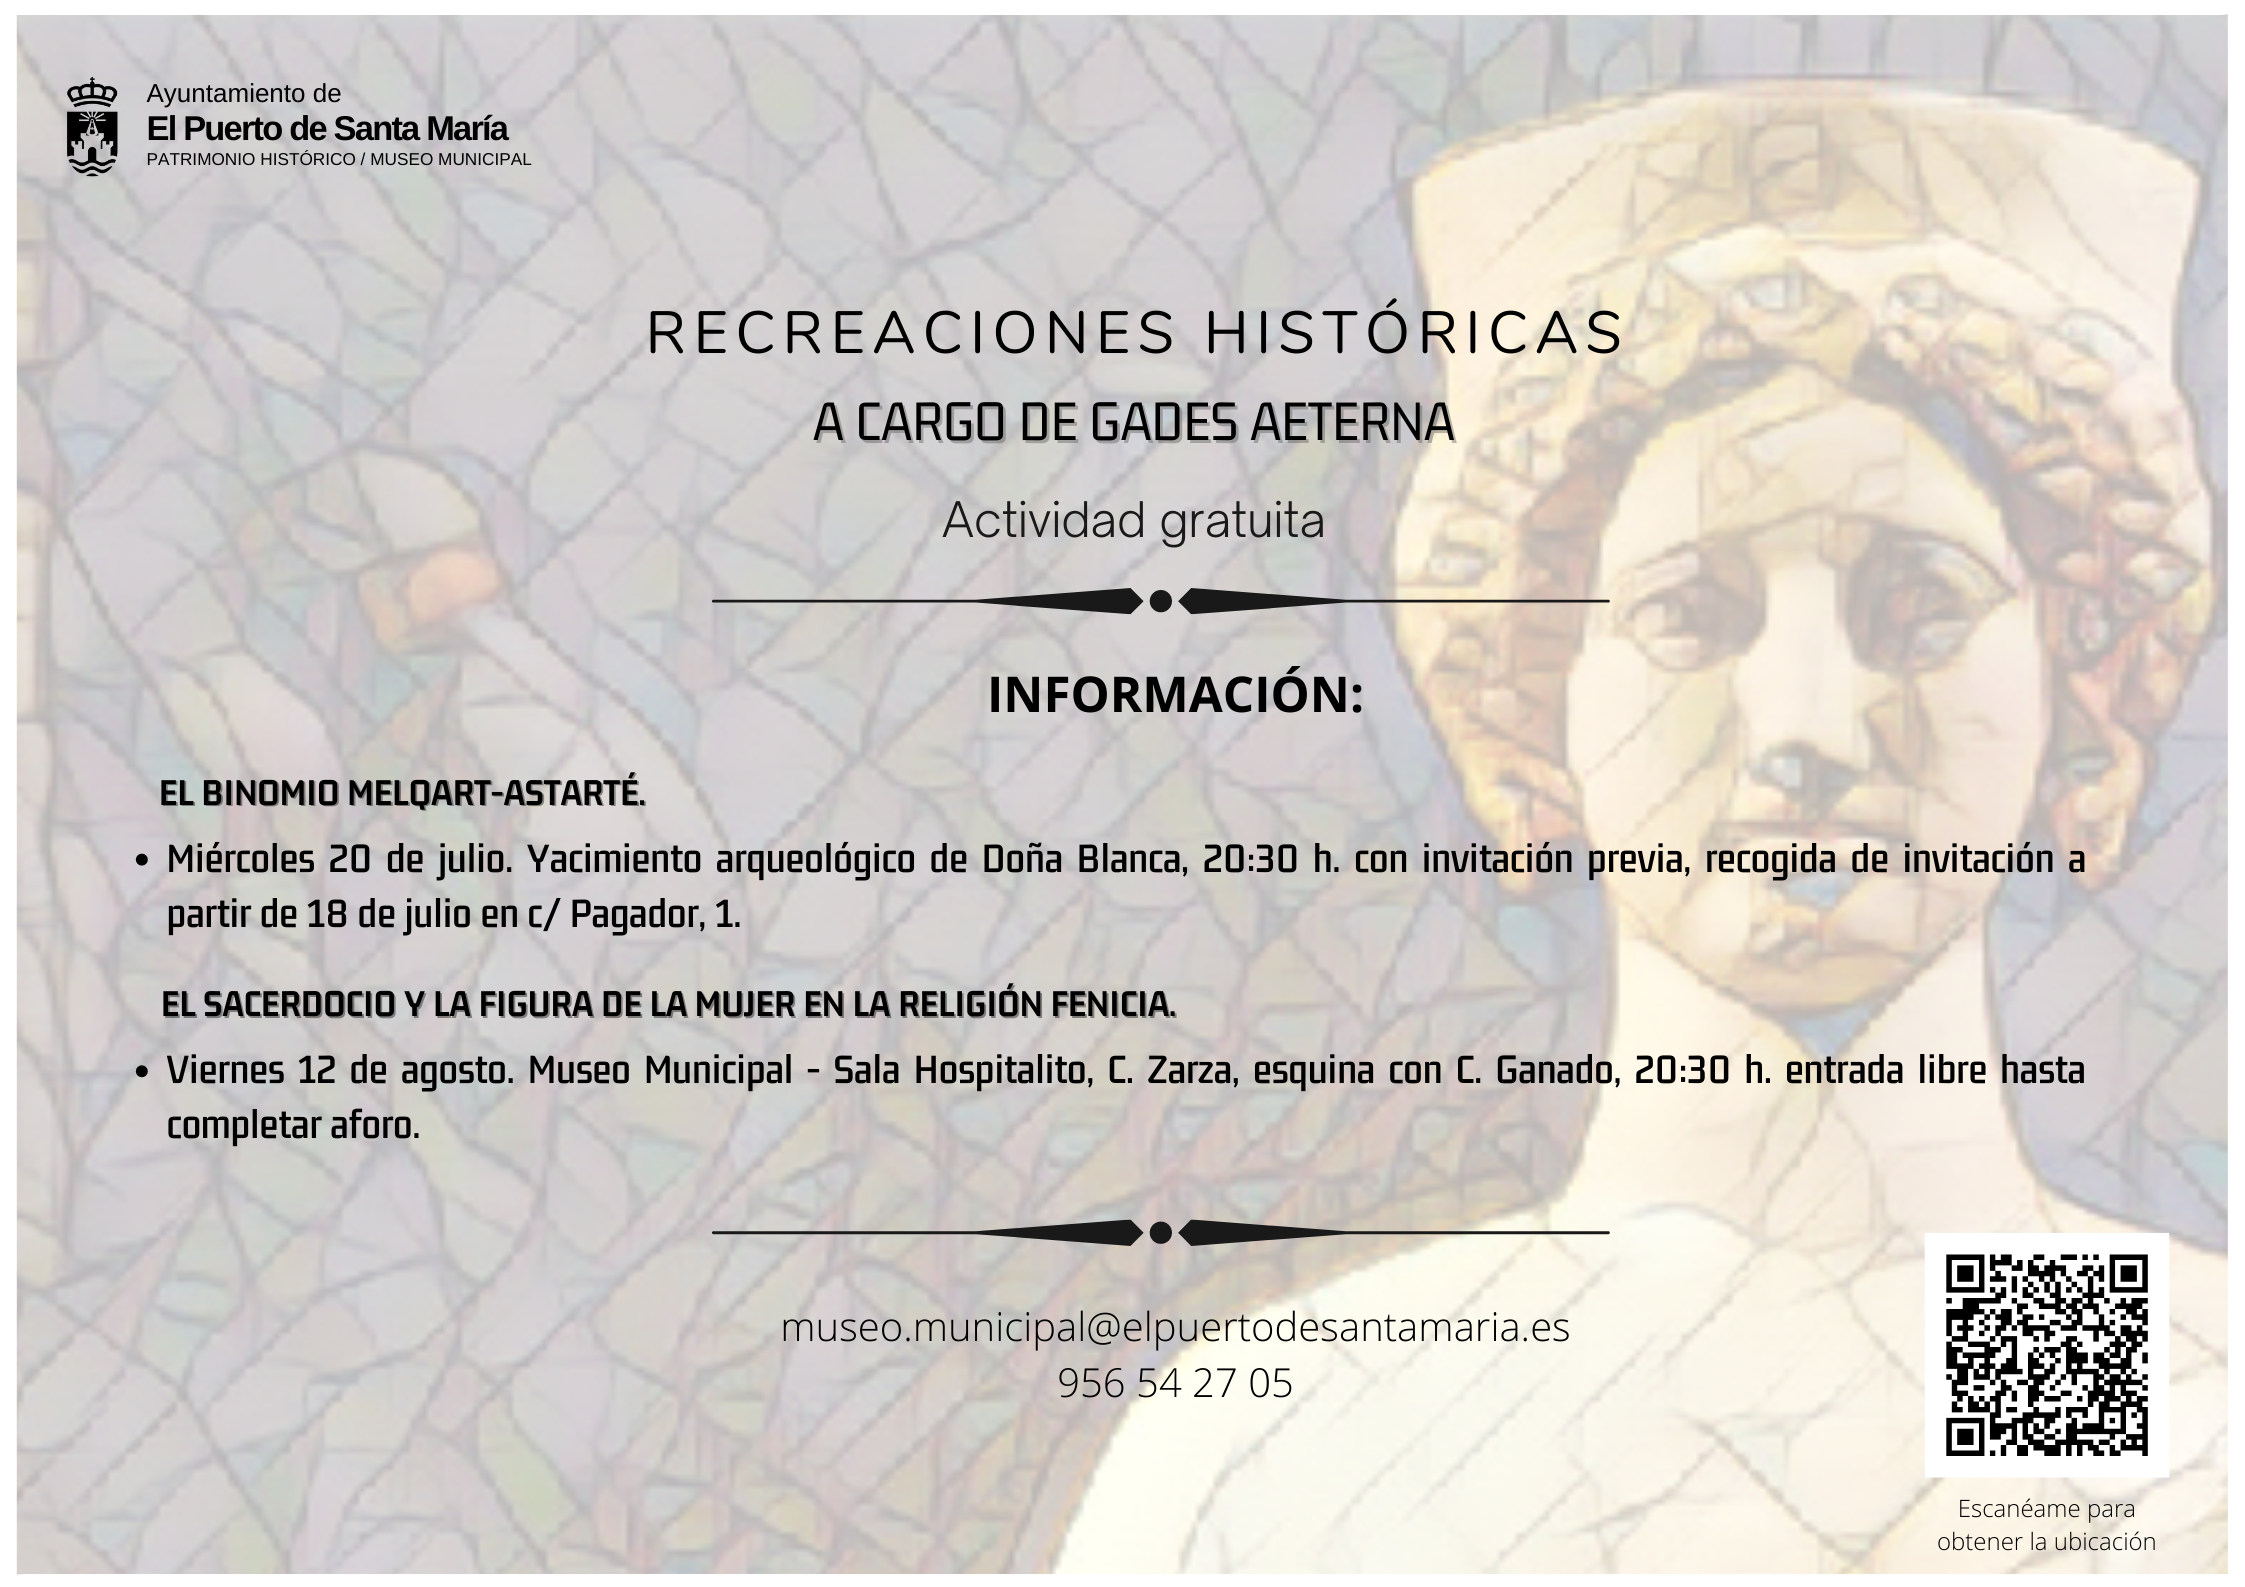 sites/default/files/2022/AGENDA/rutas-y-visitas/RECREACIONES HISTORICAS.png